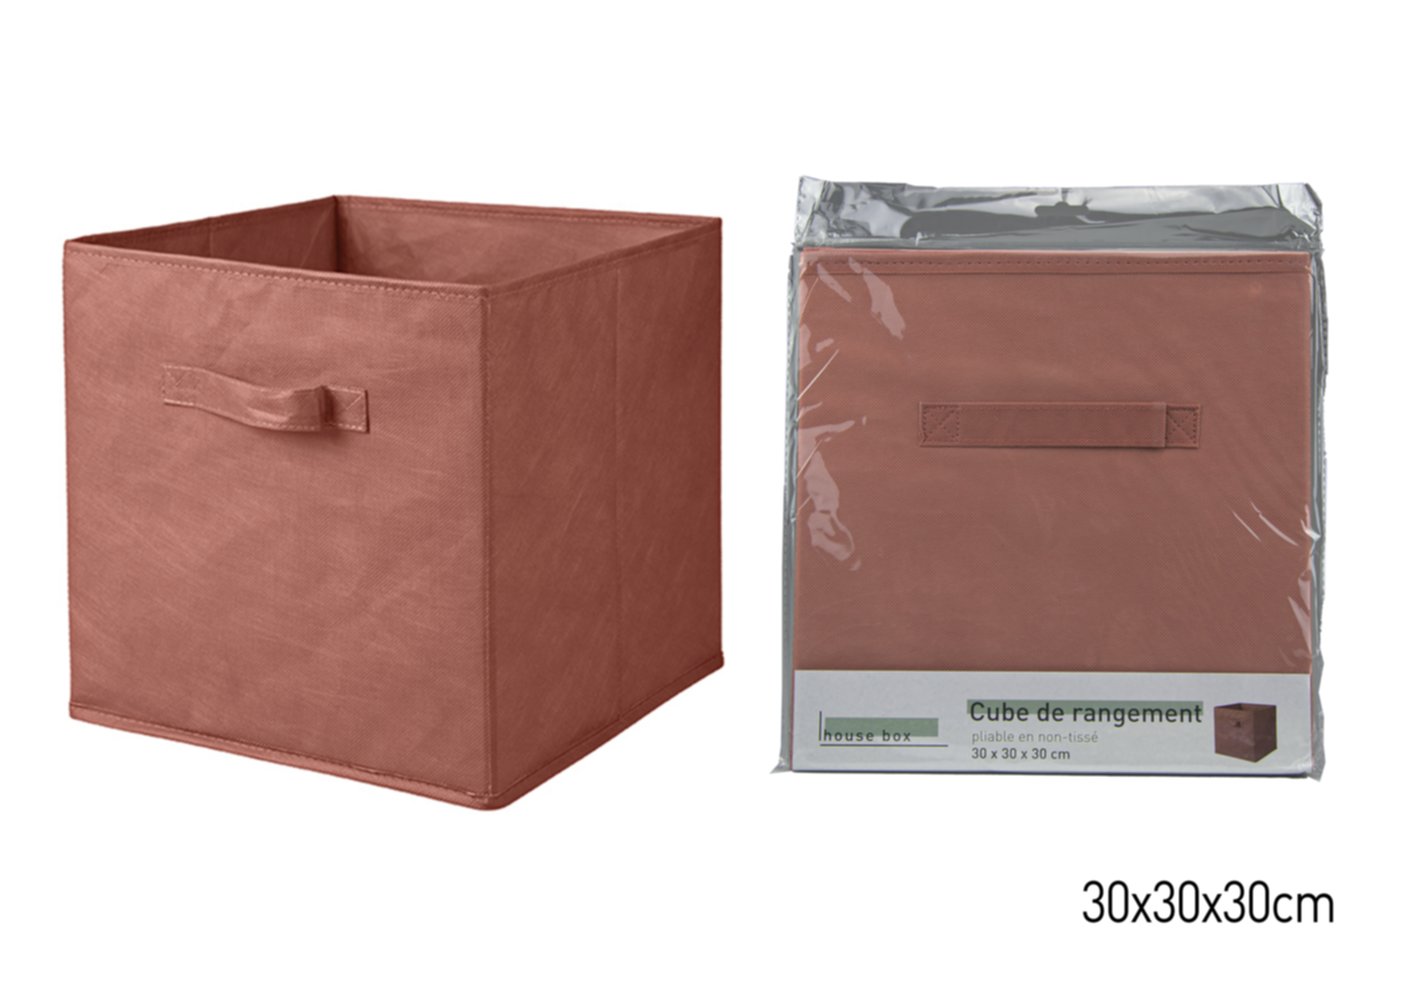 Cube de rangement pliable tomette 30 x 30 x 30 cm - KB8